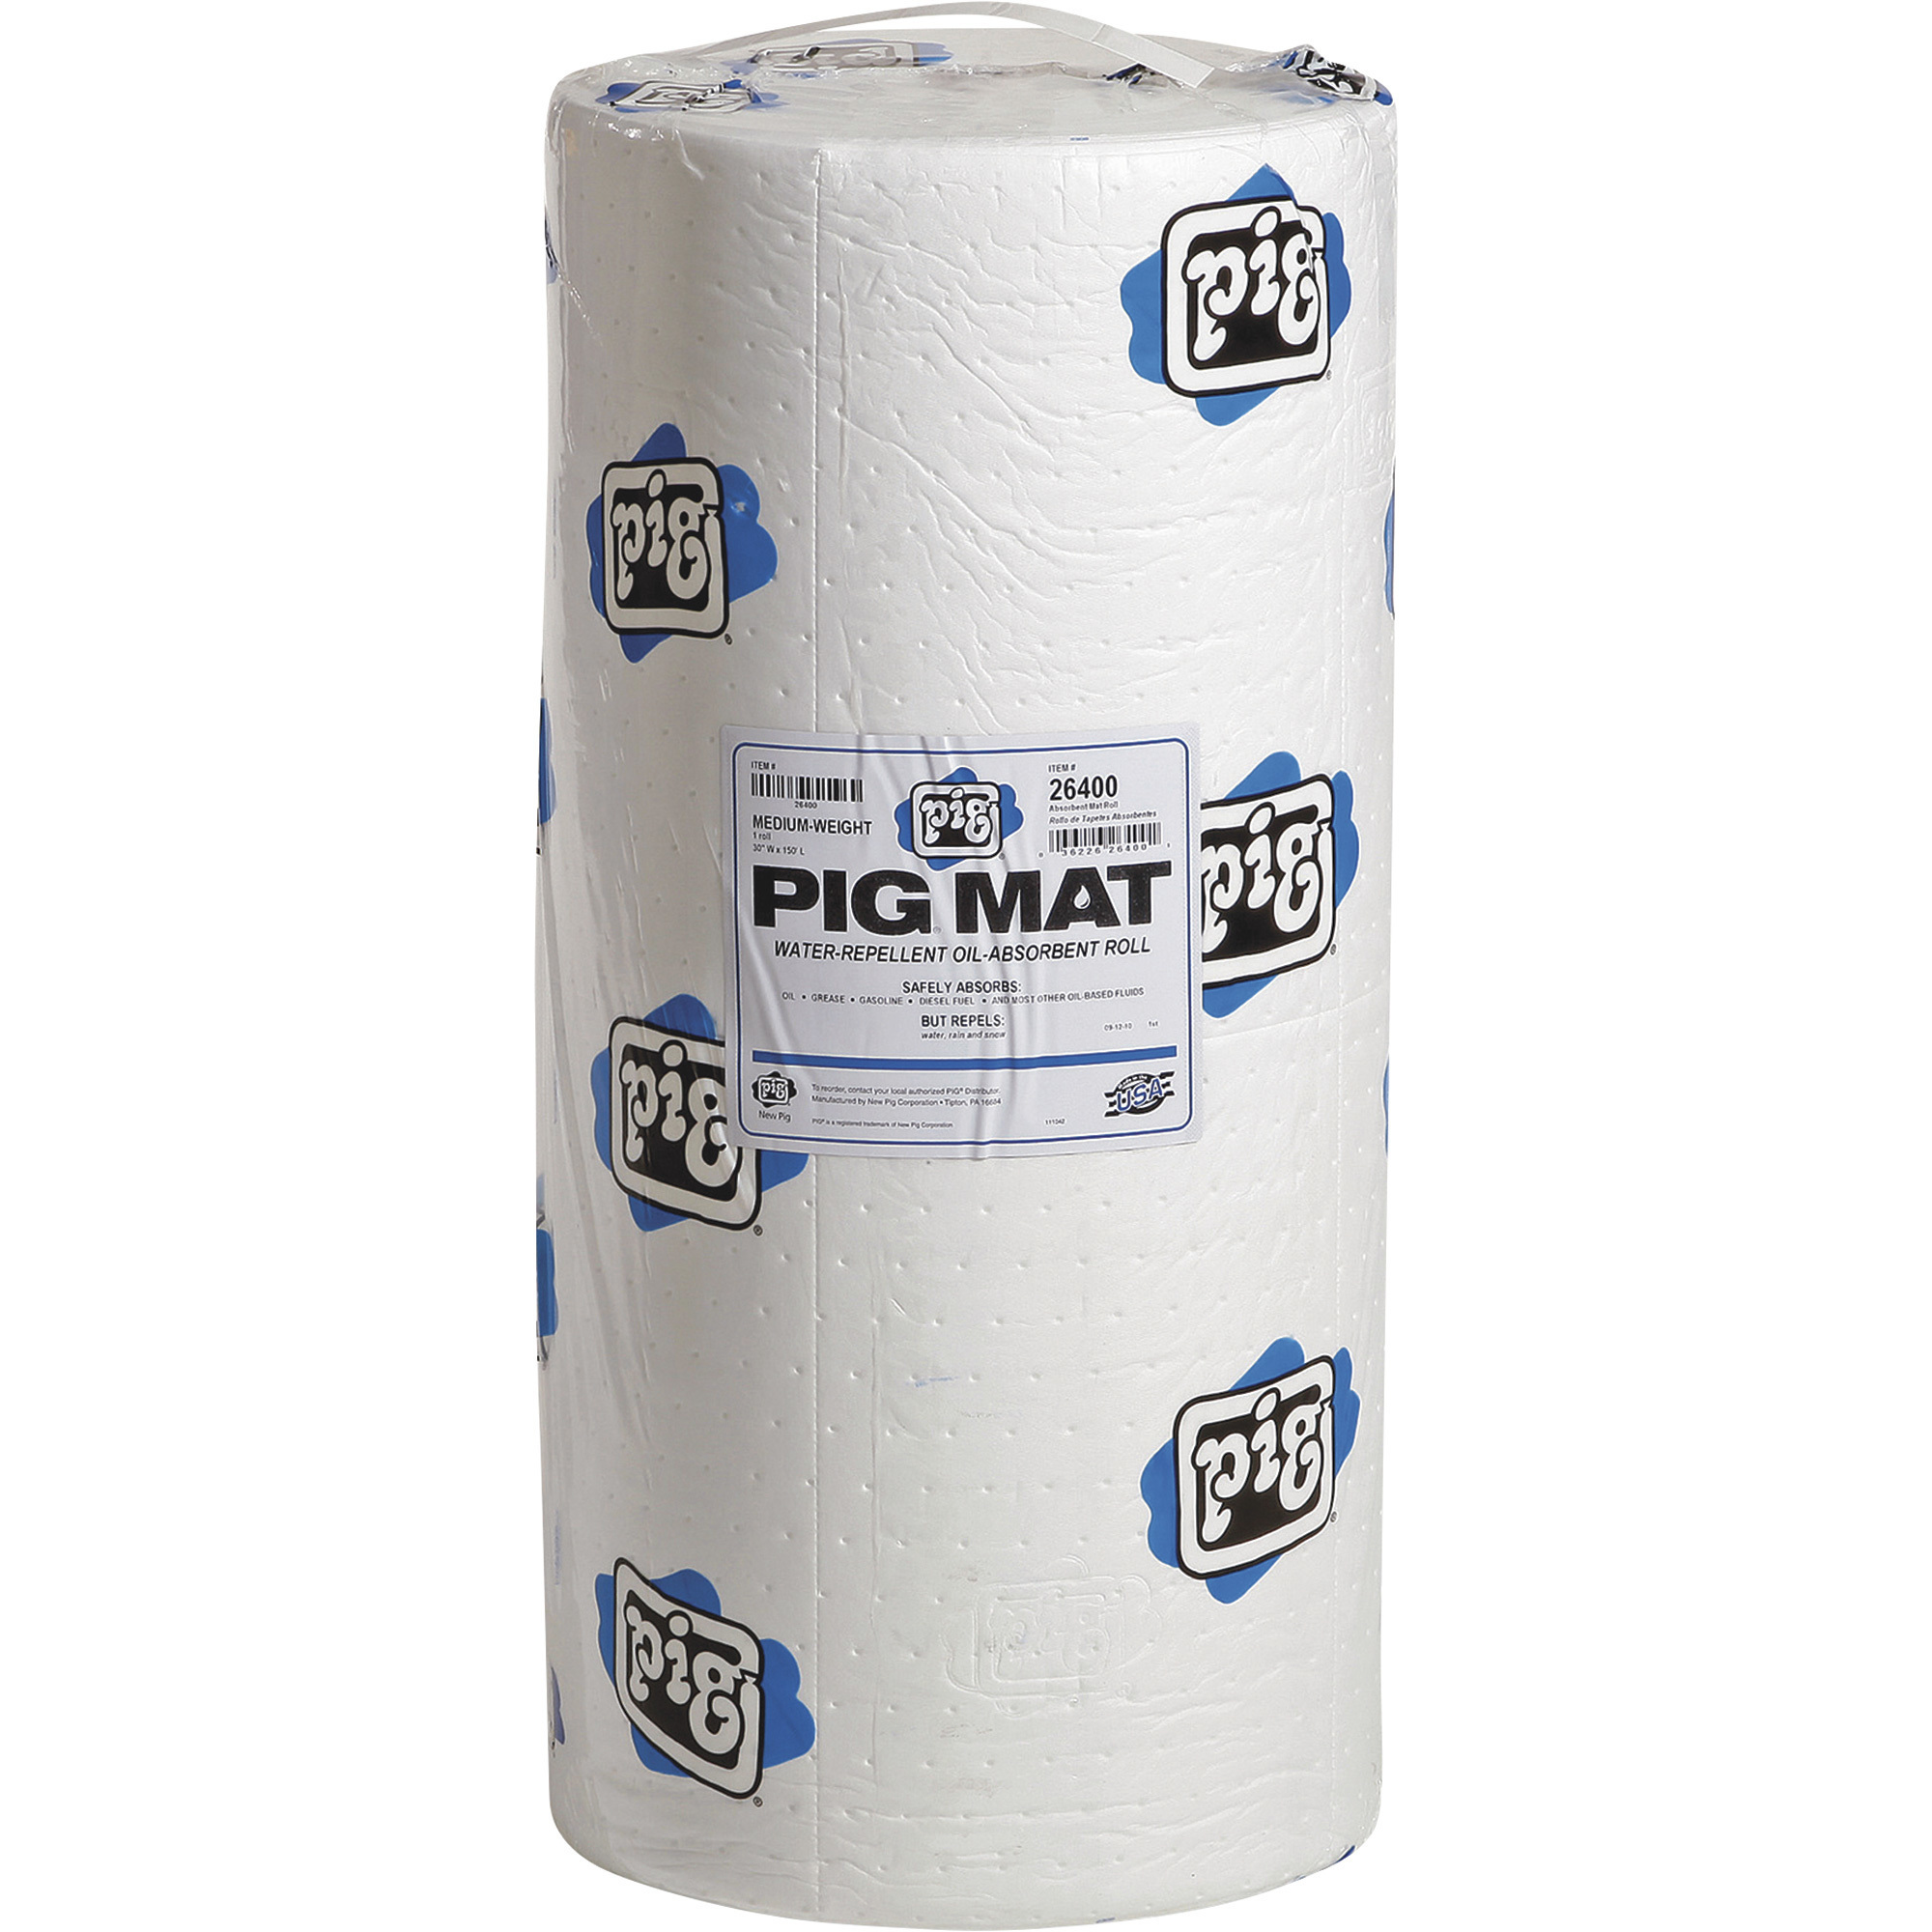 New Pig Oil-Only Medium-Weight Absorbent Mat Roll â 30Inch x 150ft., Model 26400